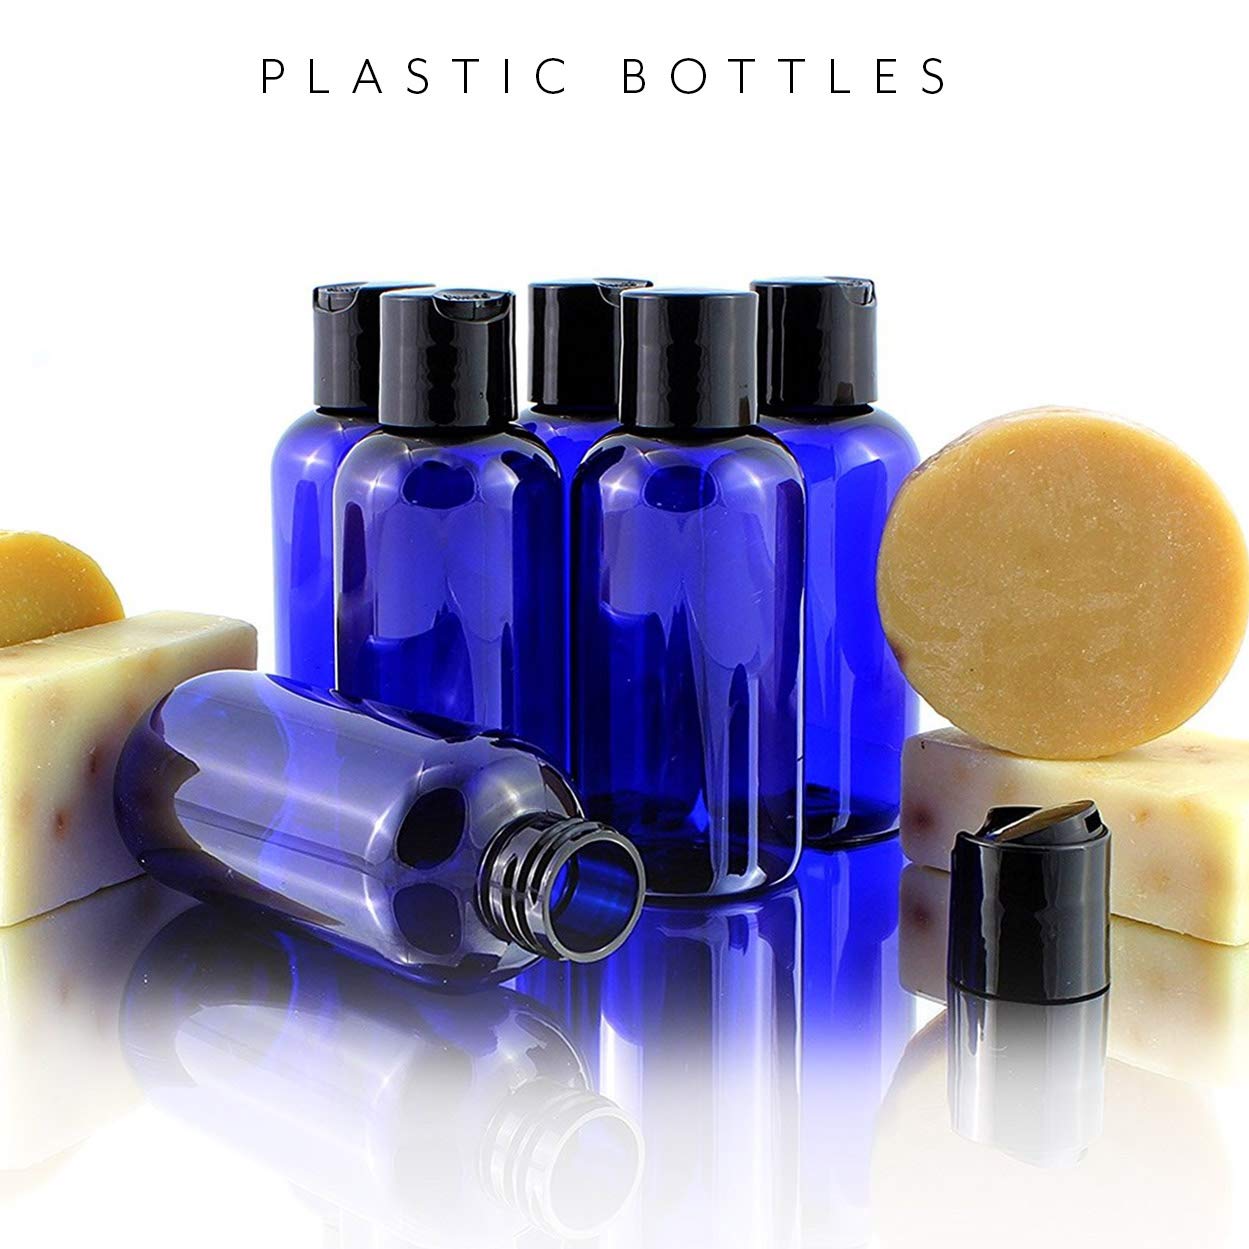 4oz Empty Cobalt Blue Plastic Squeeze Bottles with Disc Top Flip Cap (6 pack) - sh1414cb04ozBL